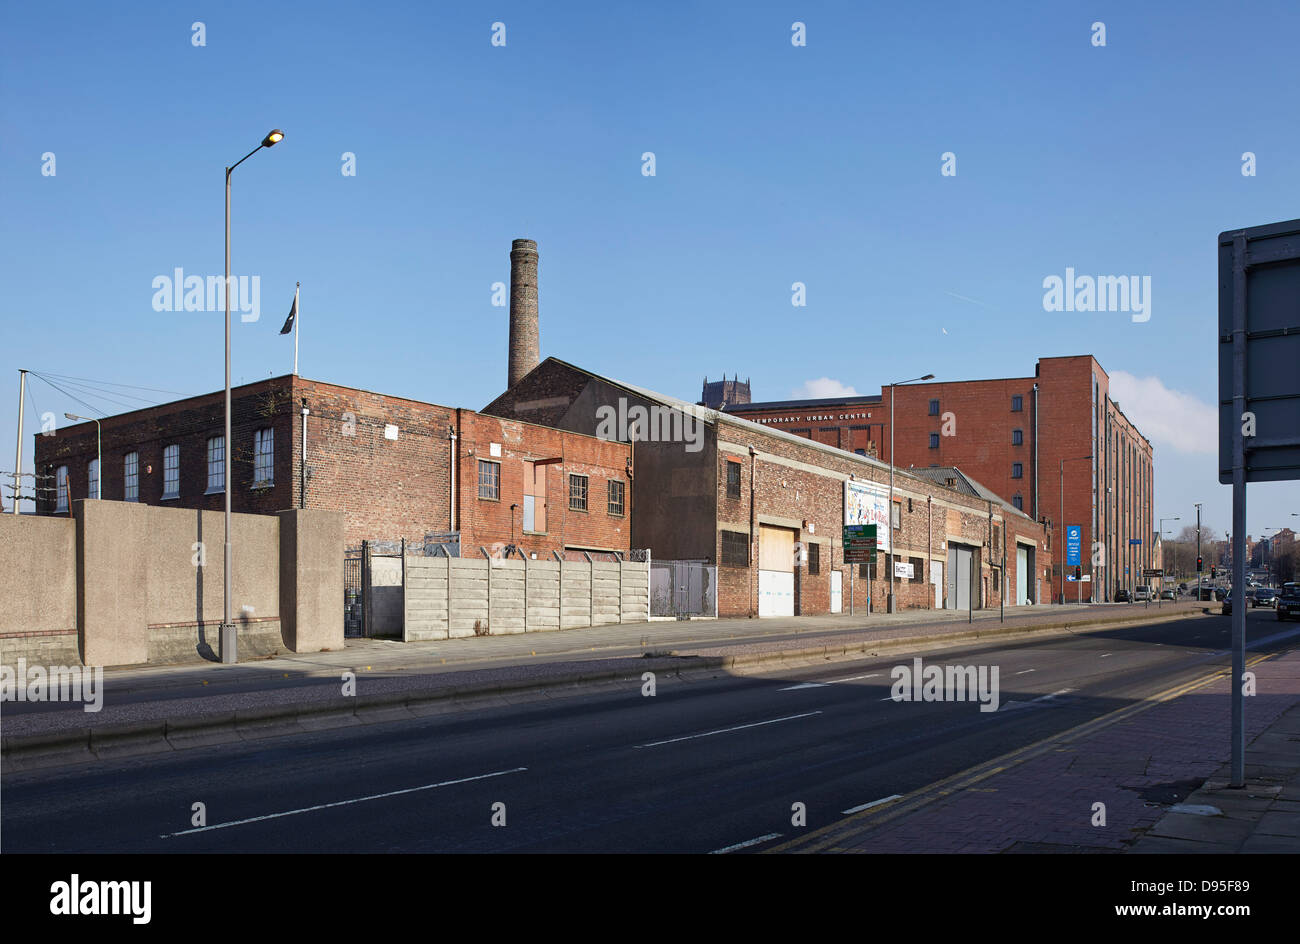 Camp und Ofen, Liverpool, Vereinigtes Königreich. Architekt: FWMA + & lächelnd Wolf, 2012. Straßenansicht des baltischen Dreiecks. Stockfoto